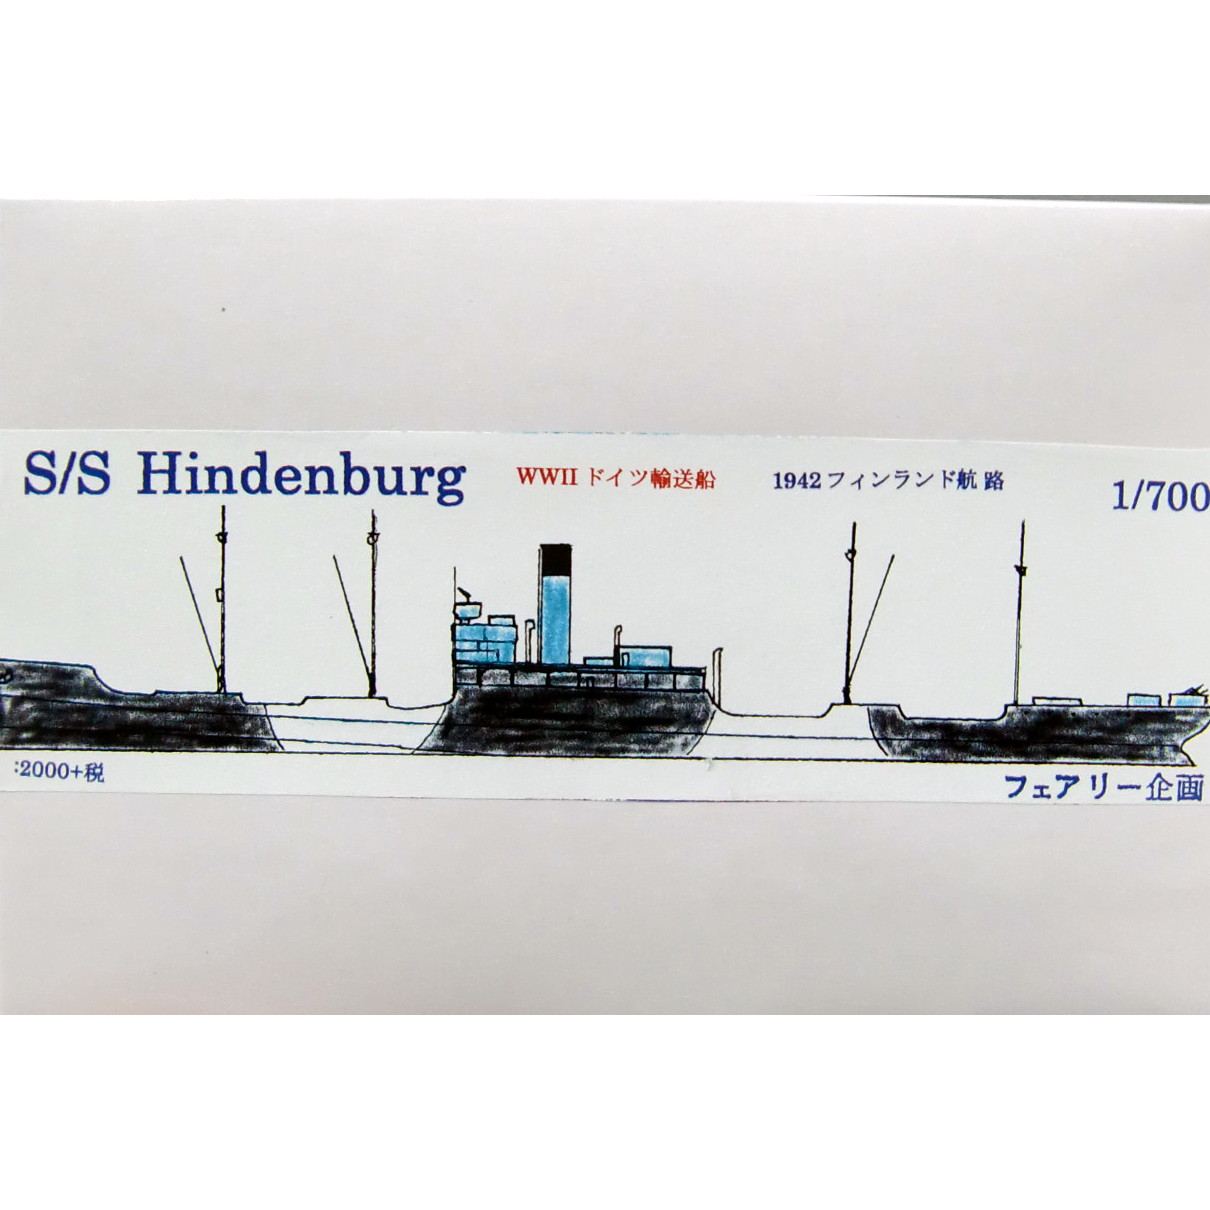 【新製品】139 WWII ドイツ 輸送船 S/S ヒンデンブルグ 1942年 フィンランド航路